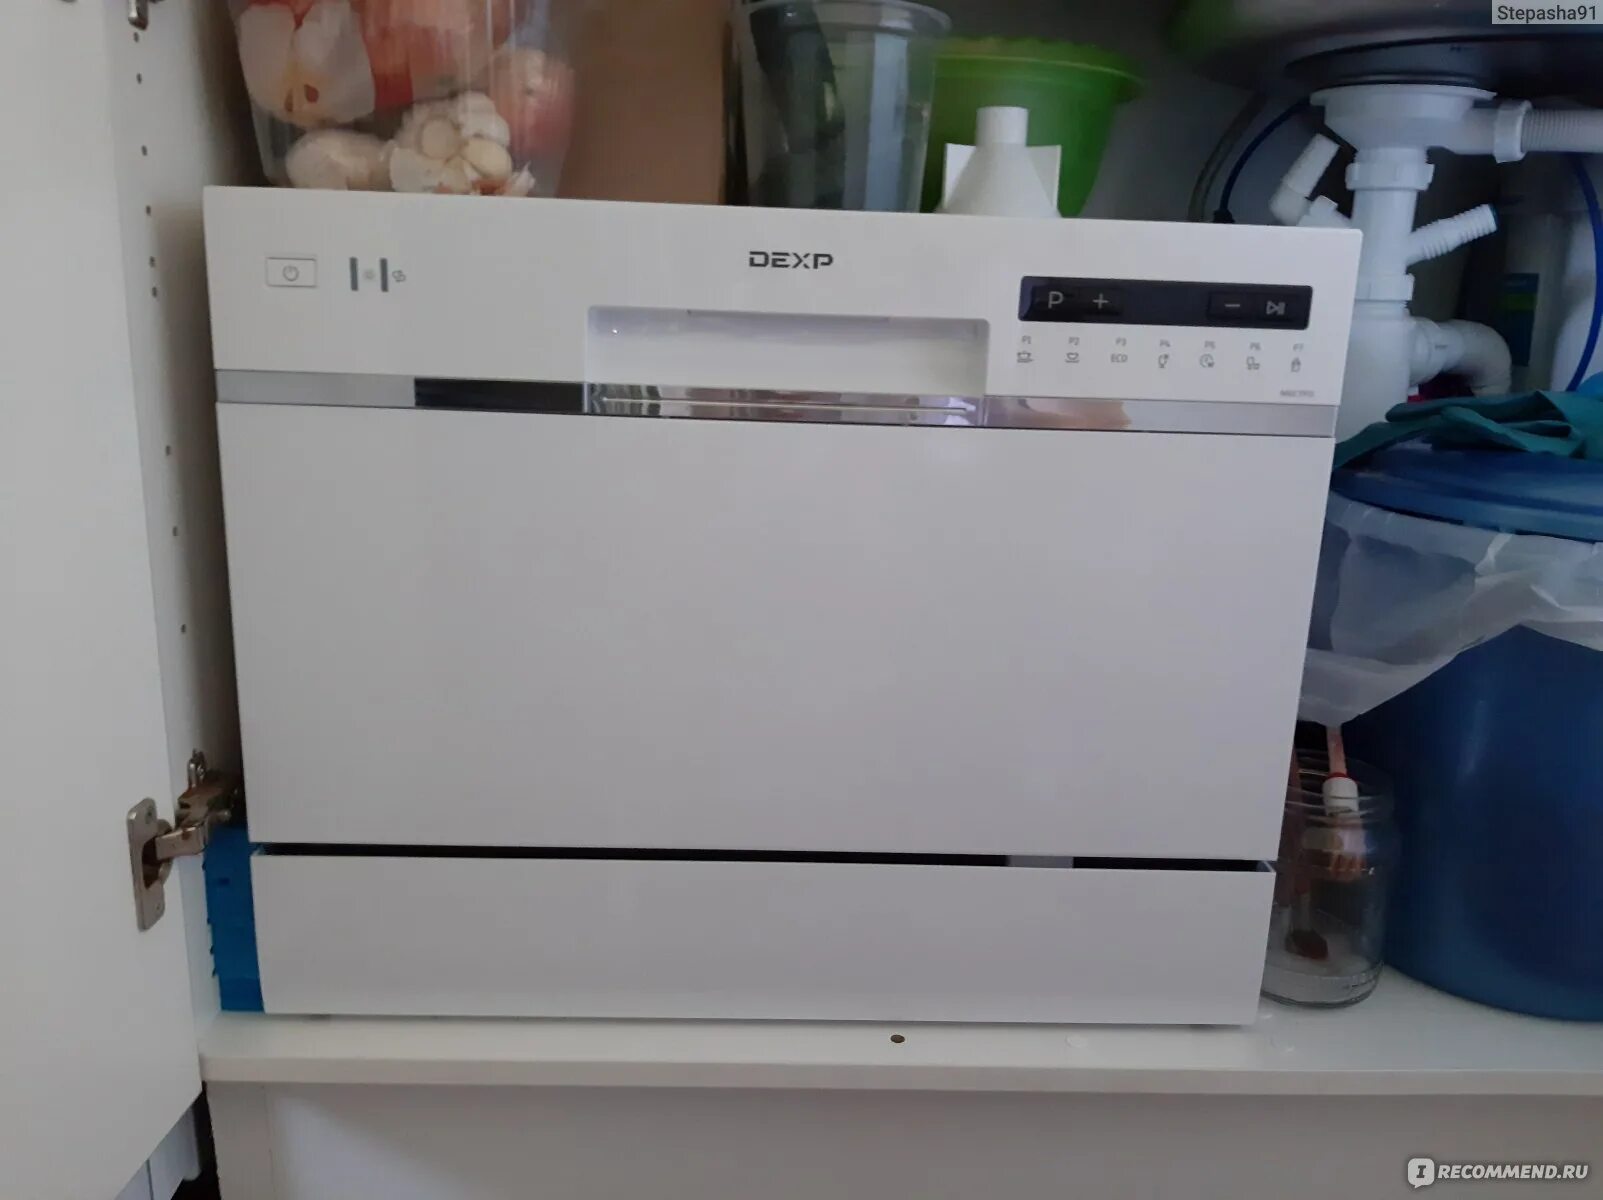 Посудомоечная машина dexp m9c7pd. DEXP m6c7pd. Посудомоечная машина дексп м6с7pd. Посудомоечная машина DEXP m6d7pf. Посудомоечная машина DEXP m6c7pd белый.